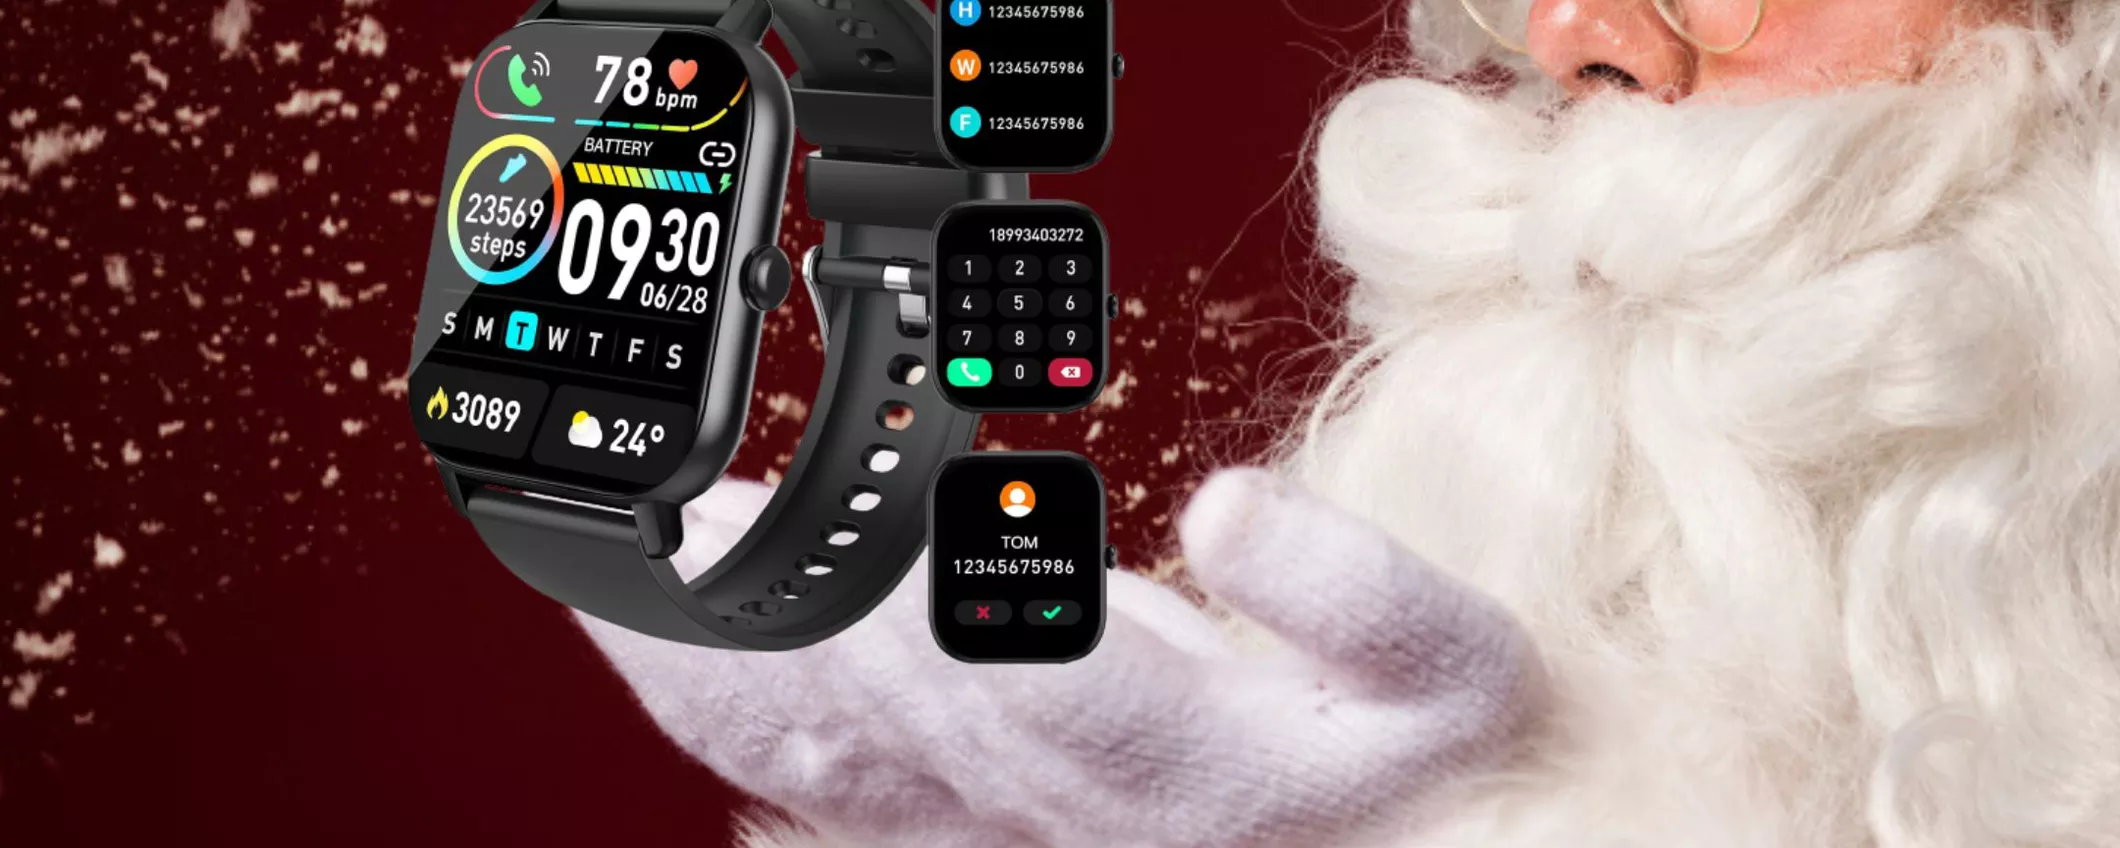 Idee regalo per Natale: Smartwatch tutto fare in OFFERTA a soli 29 euro!